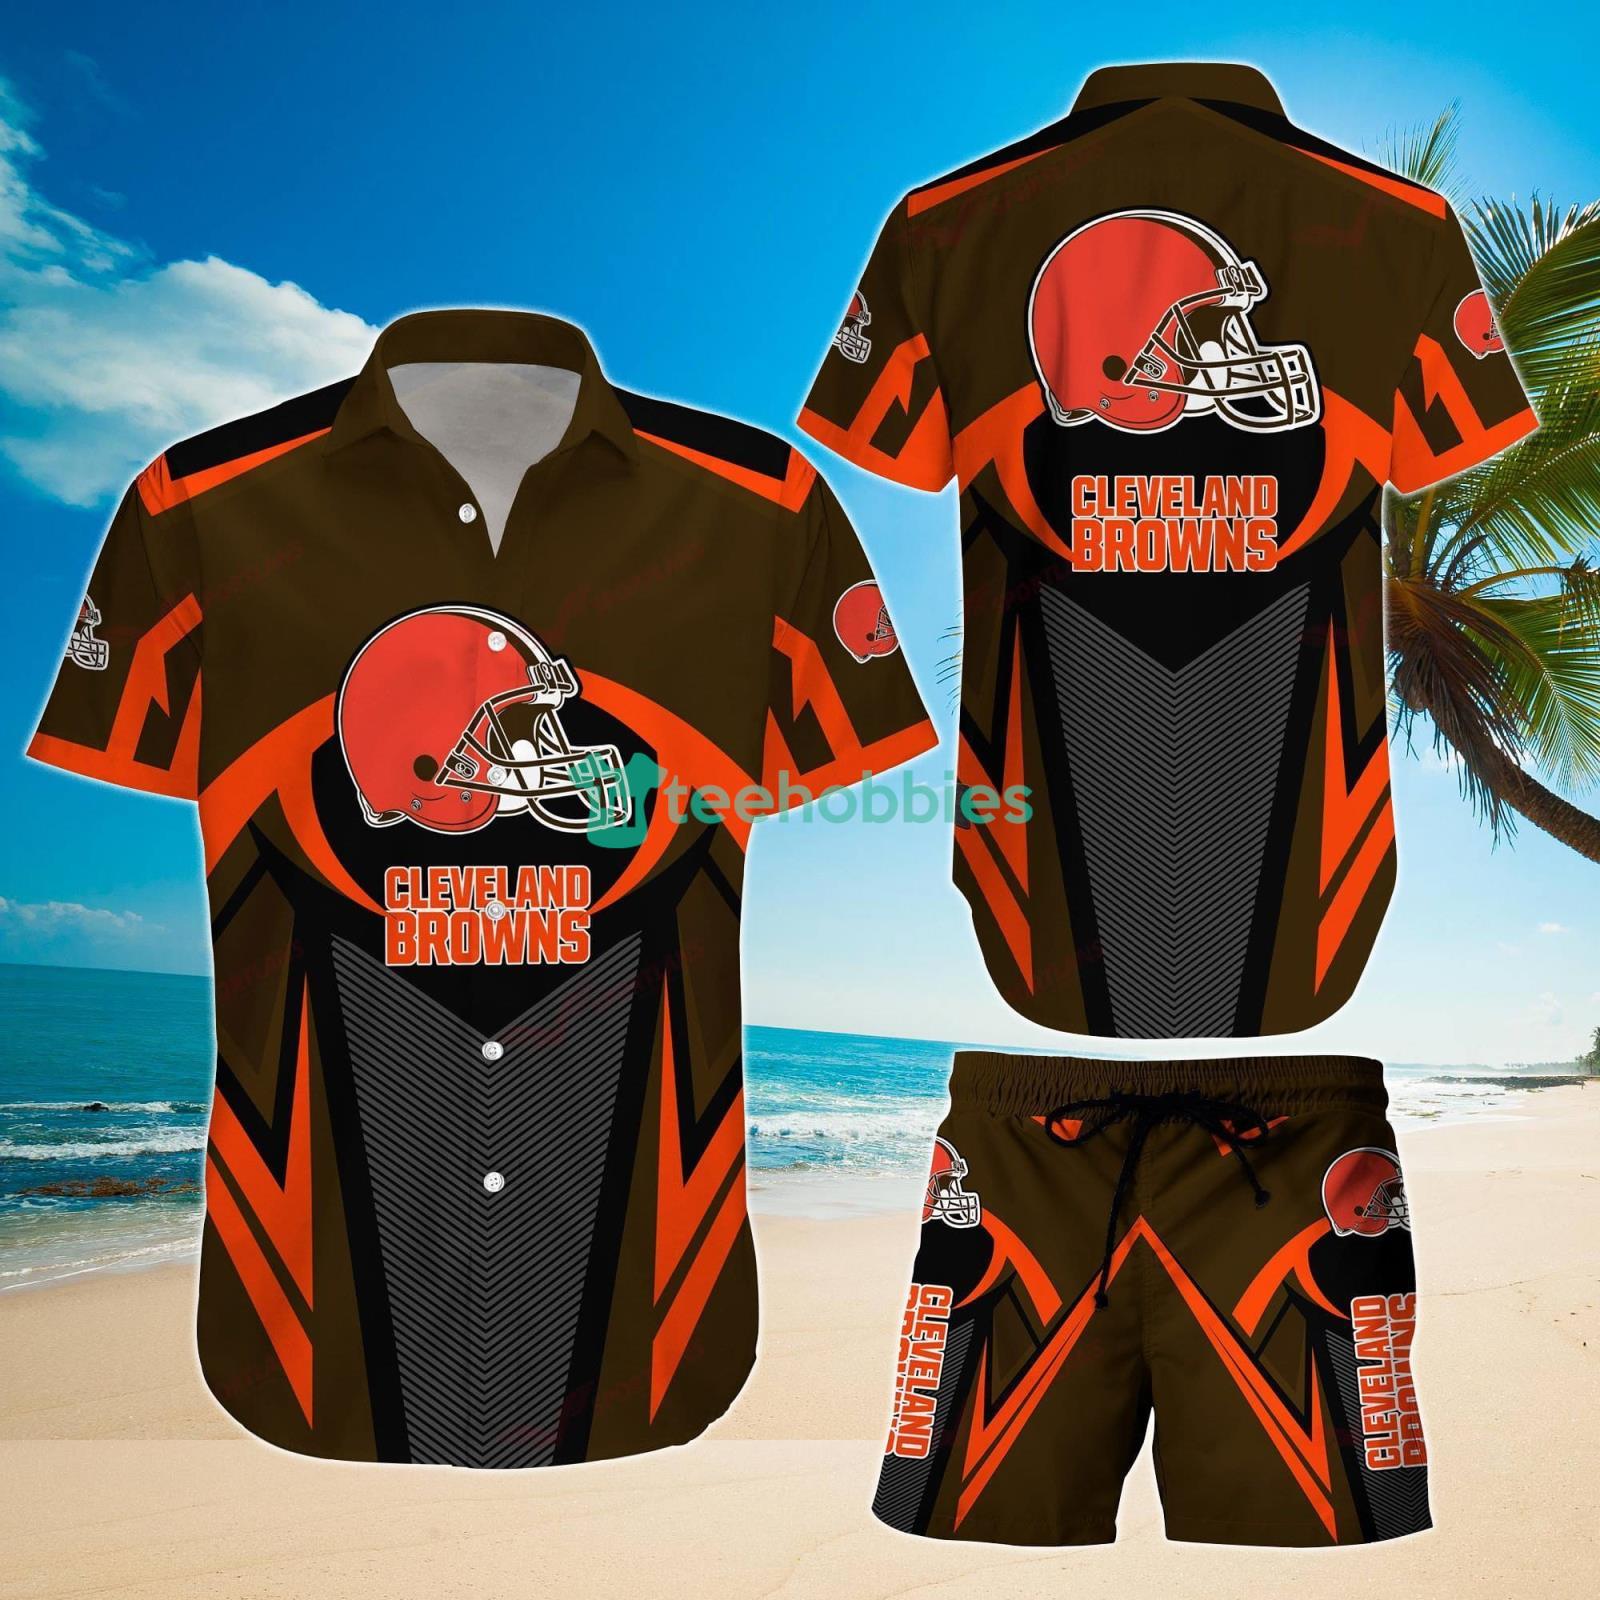 NFL Cleveland Browns Fans Louis Vuitton Hawaiian Shirt For Men And